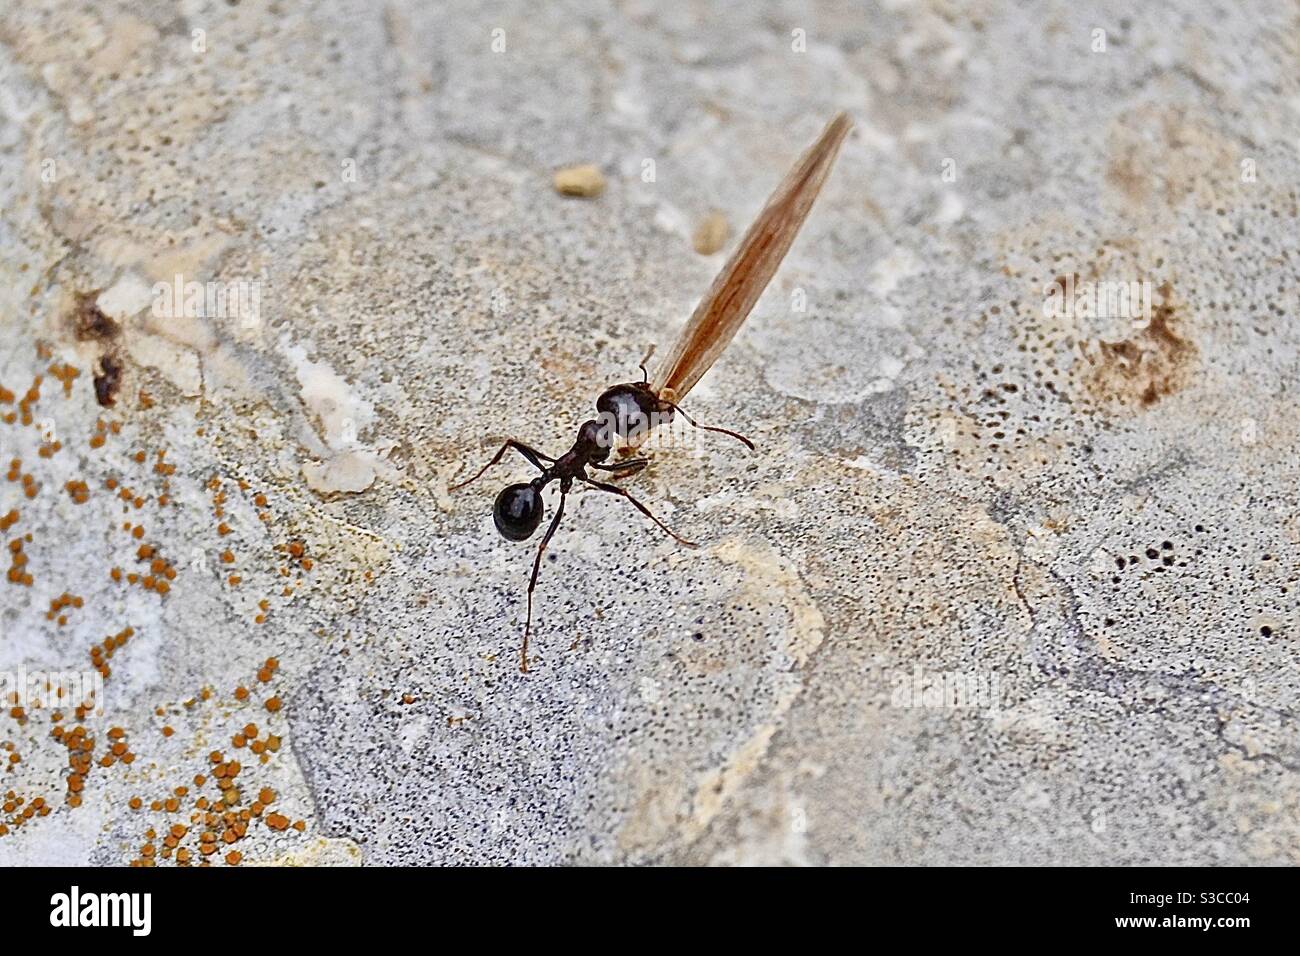 Eine große Ameise in Matera, Italien trägt ein totes Blatt zwischen ihrer mächtigen Zange wie Kiefer und kriecht entlang eines Felsens in der heißen Mittagssonne Stockfoto